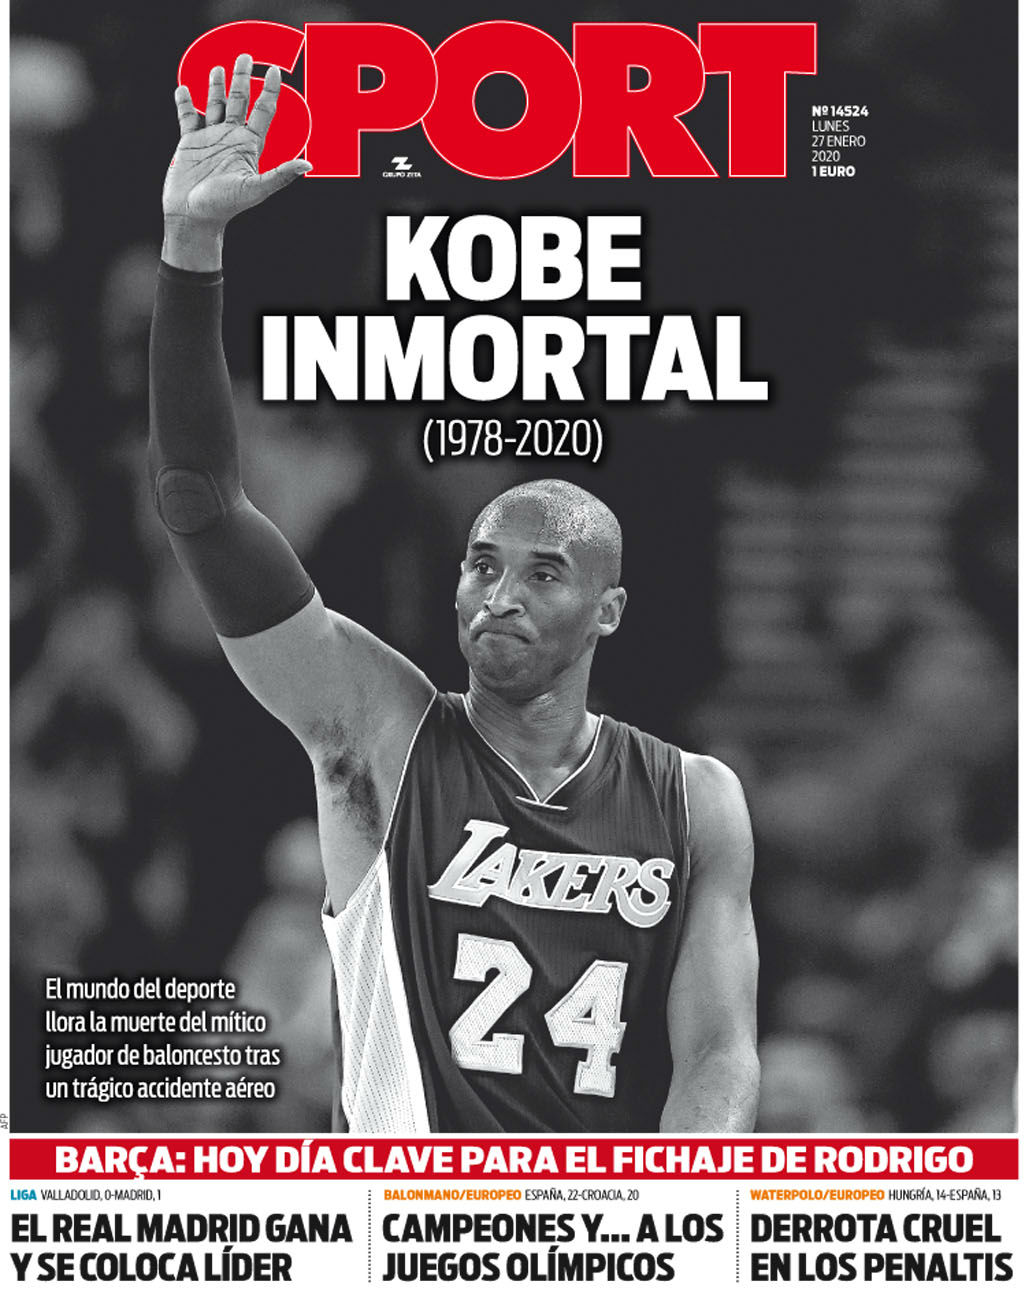 O diário "Sport", da Catalunha, denomina "Kobe Imortal". E destaca: "o mundo chora com a morte do mítico jogador de basquete".